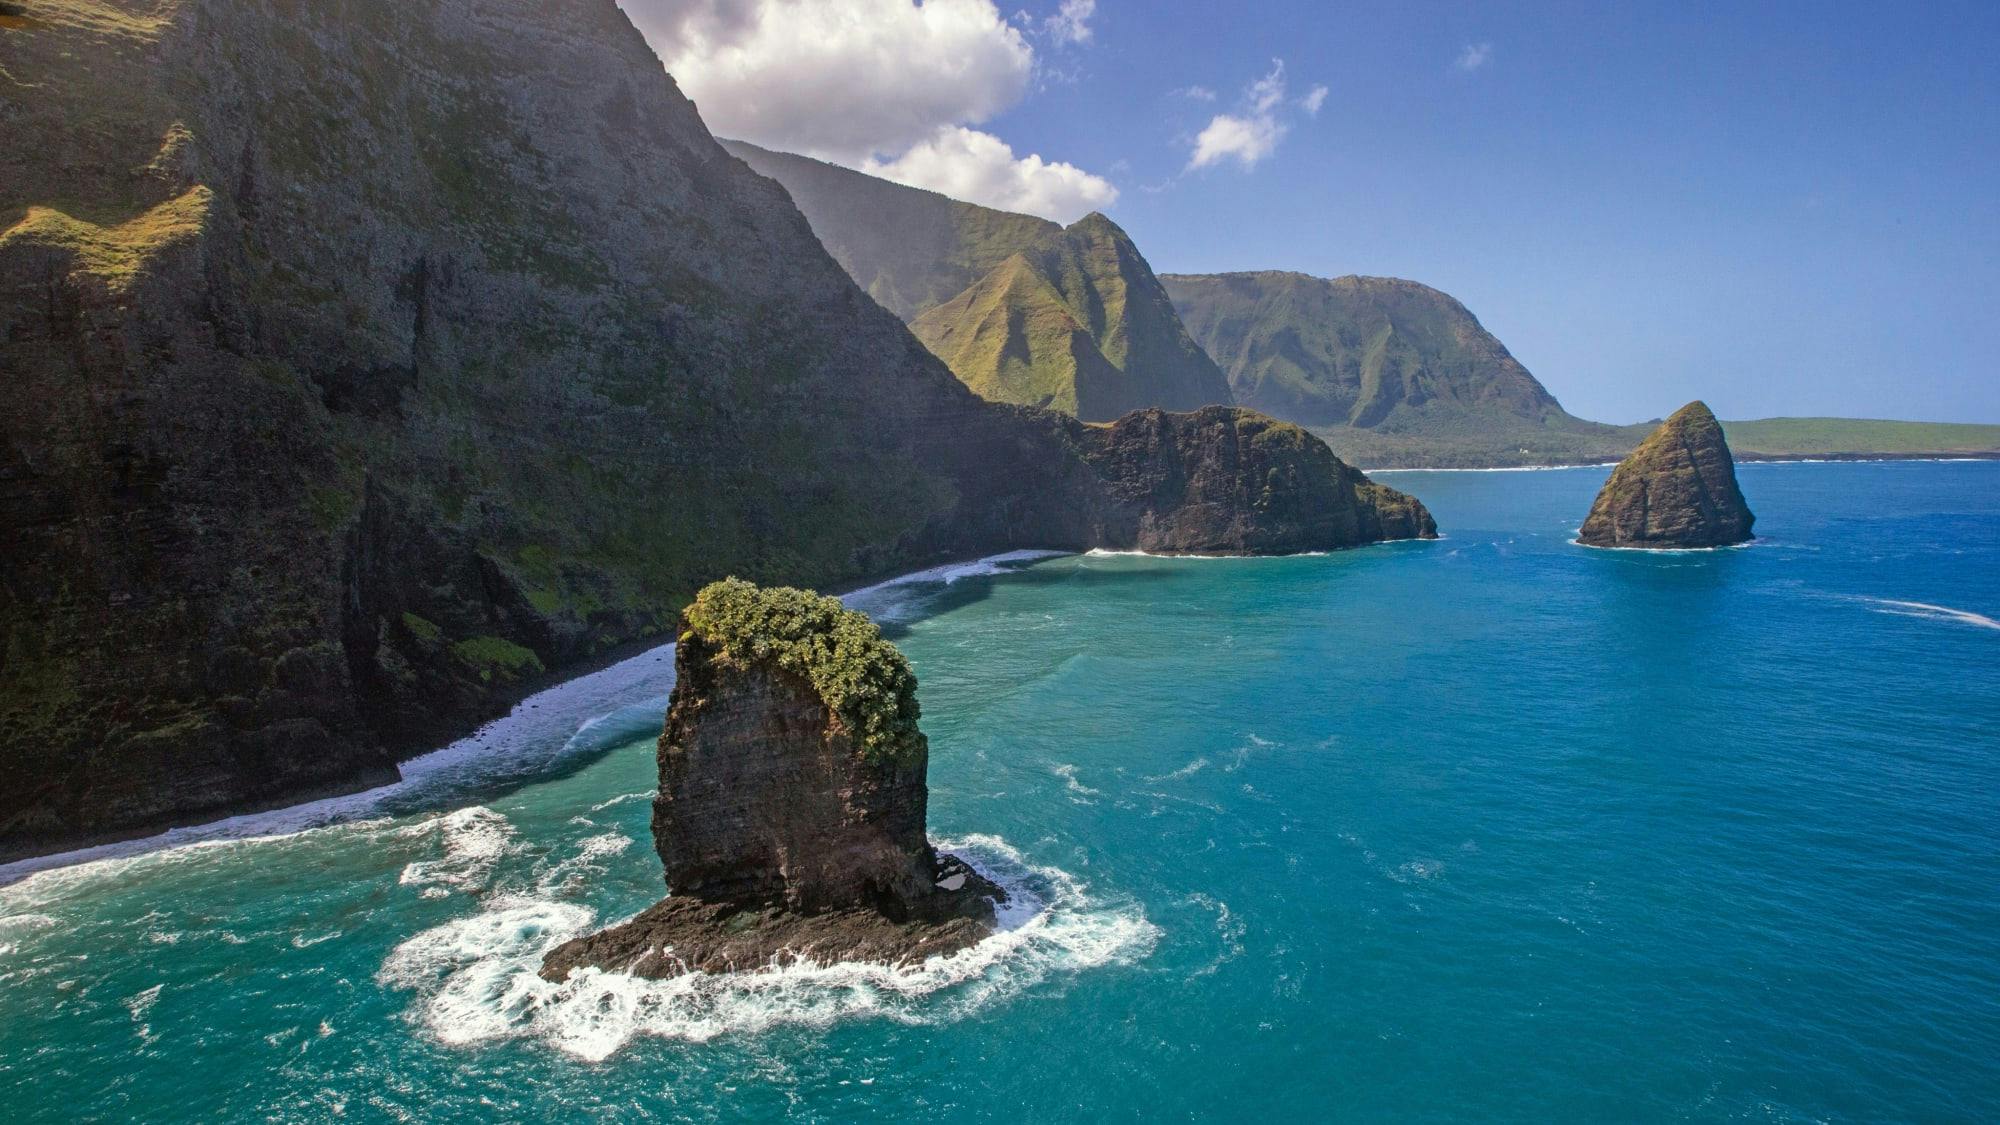 Molokai cliffs